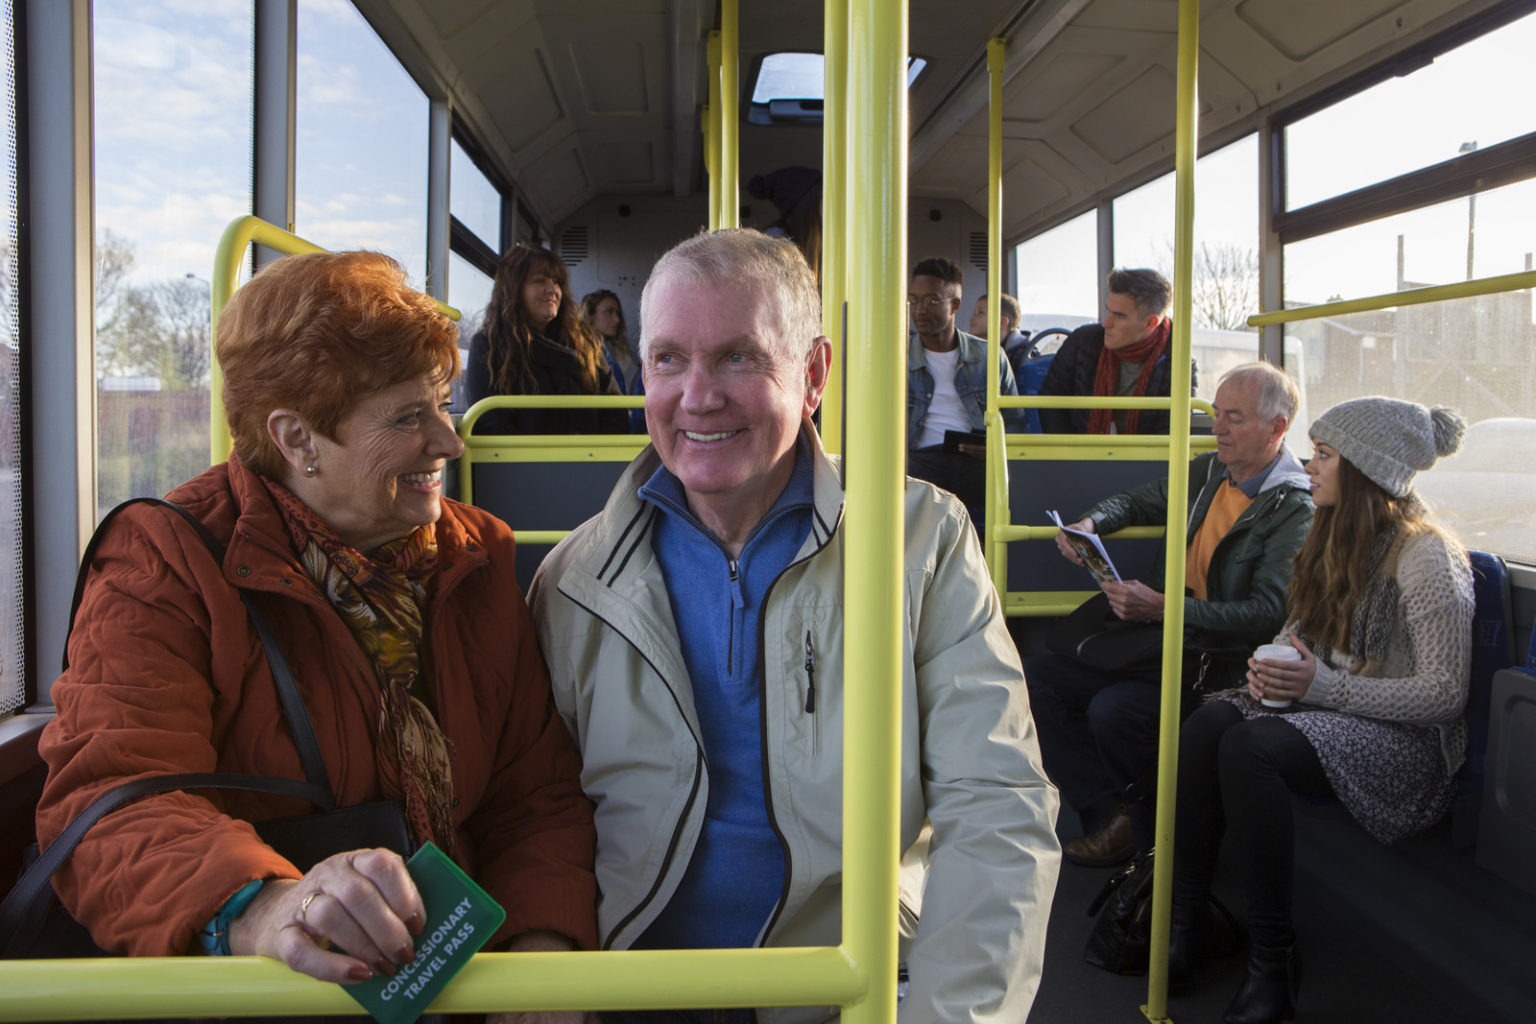 senior bus tours new england